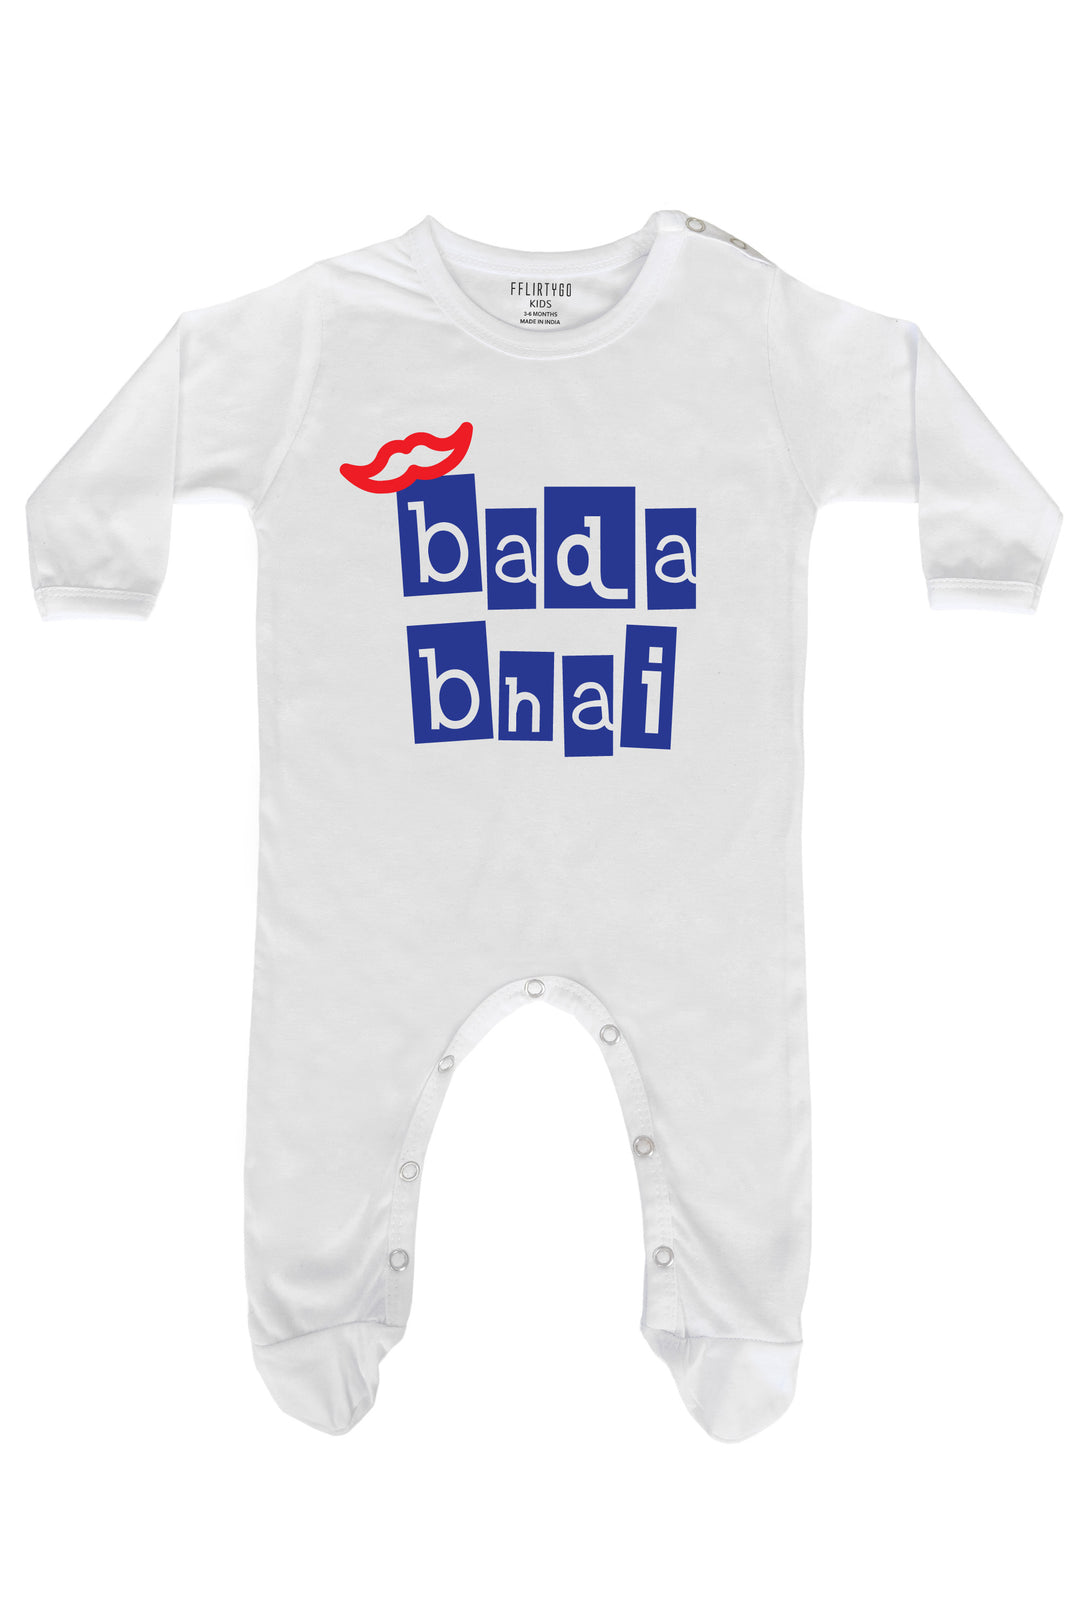 Bada Bhai in Box Design Baby Romper | Onesies